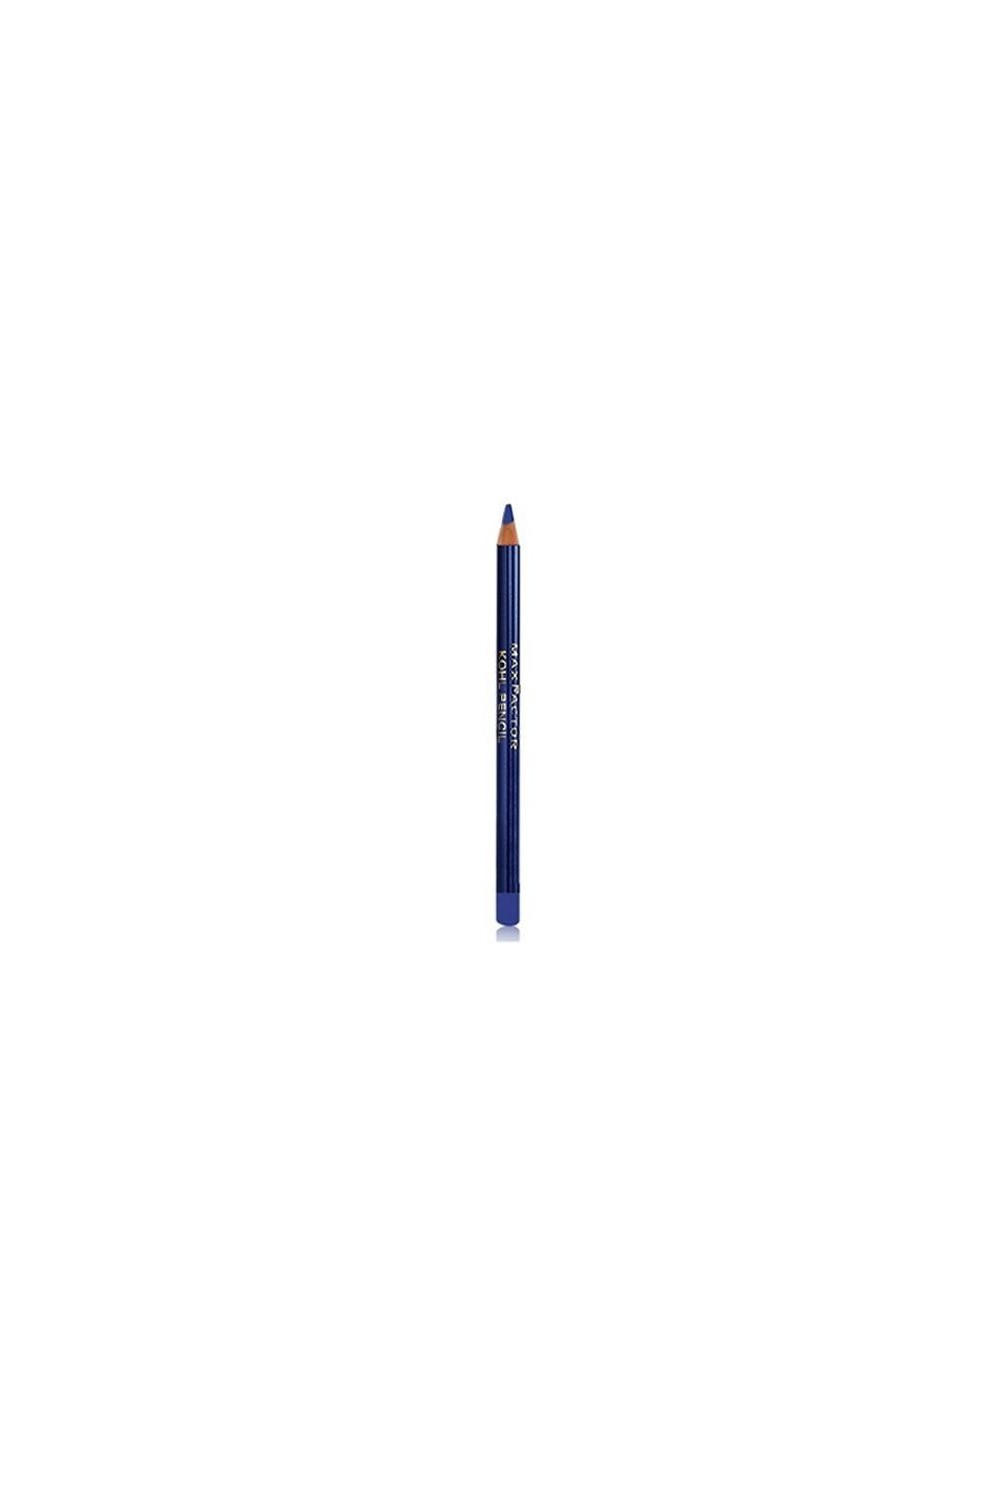 Max Factor Khol Eye Liner Pencil 80 Cobalt Blue